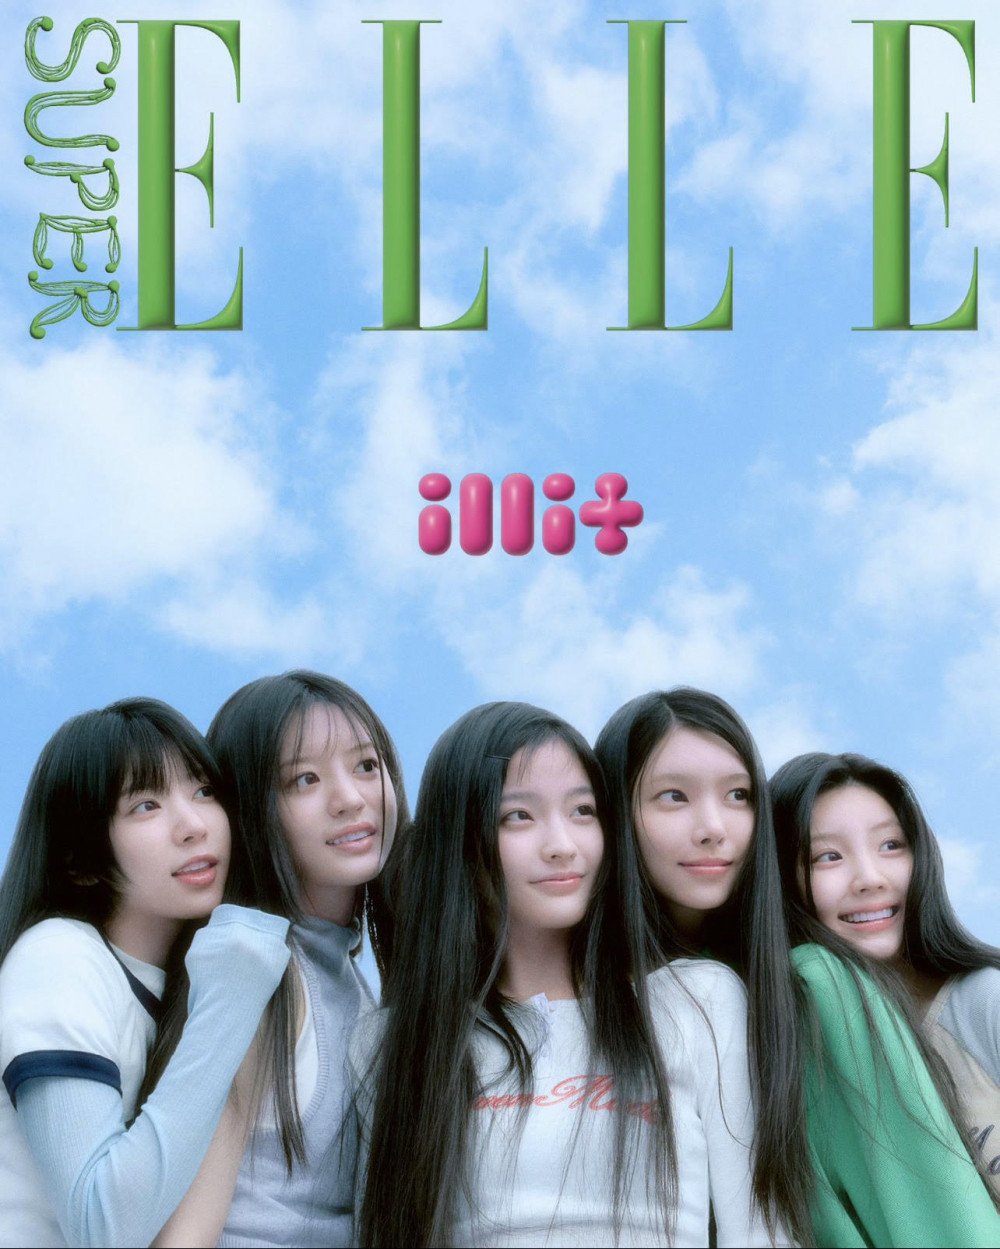 ILLIT украсили обложку журнала "ELLE" в рамках проекта "SUPER ELLE"